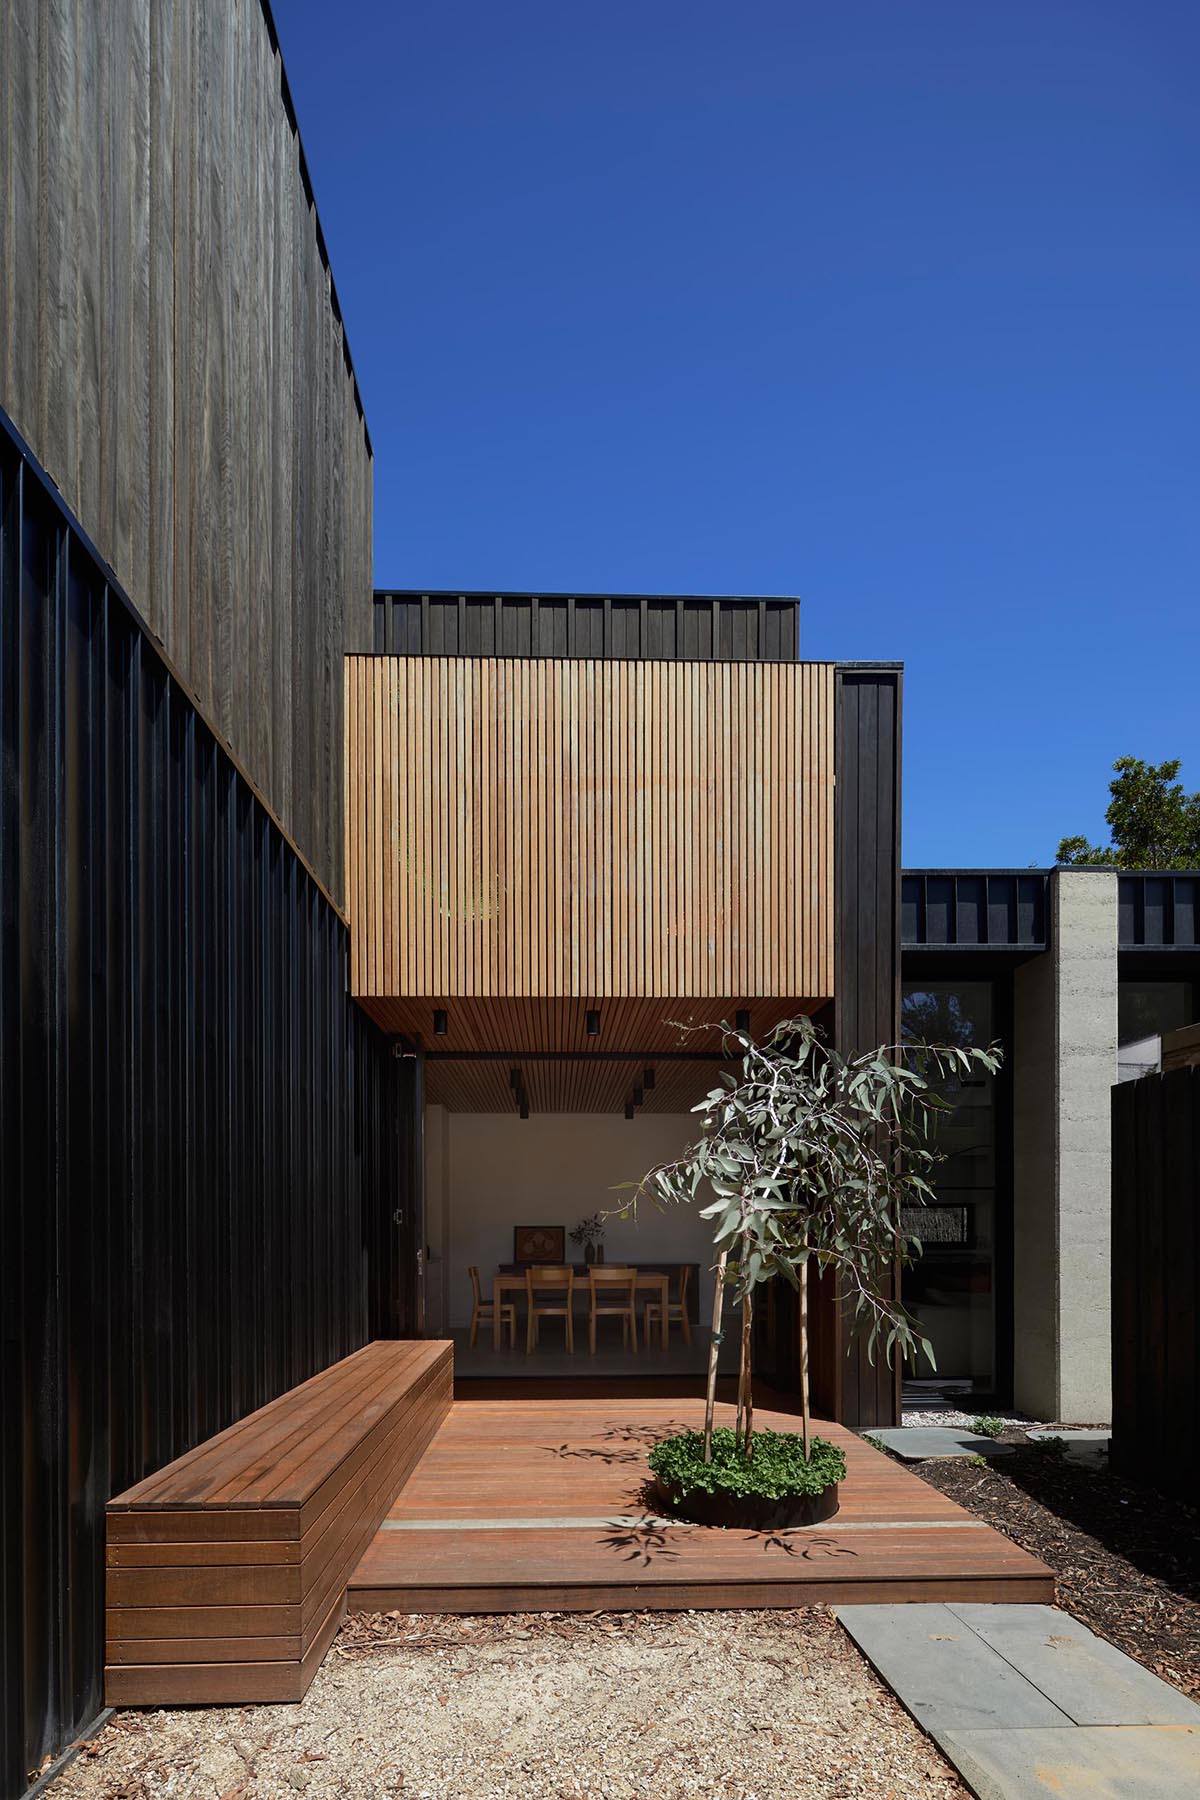 Современный дом с фасадом из темного дерева и бетона и террасой со встроенной скамейкой из осветительного дерева.